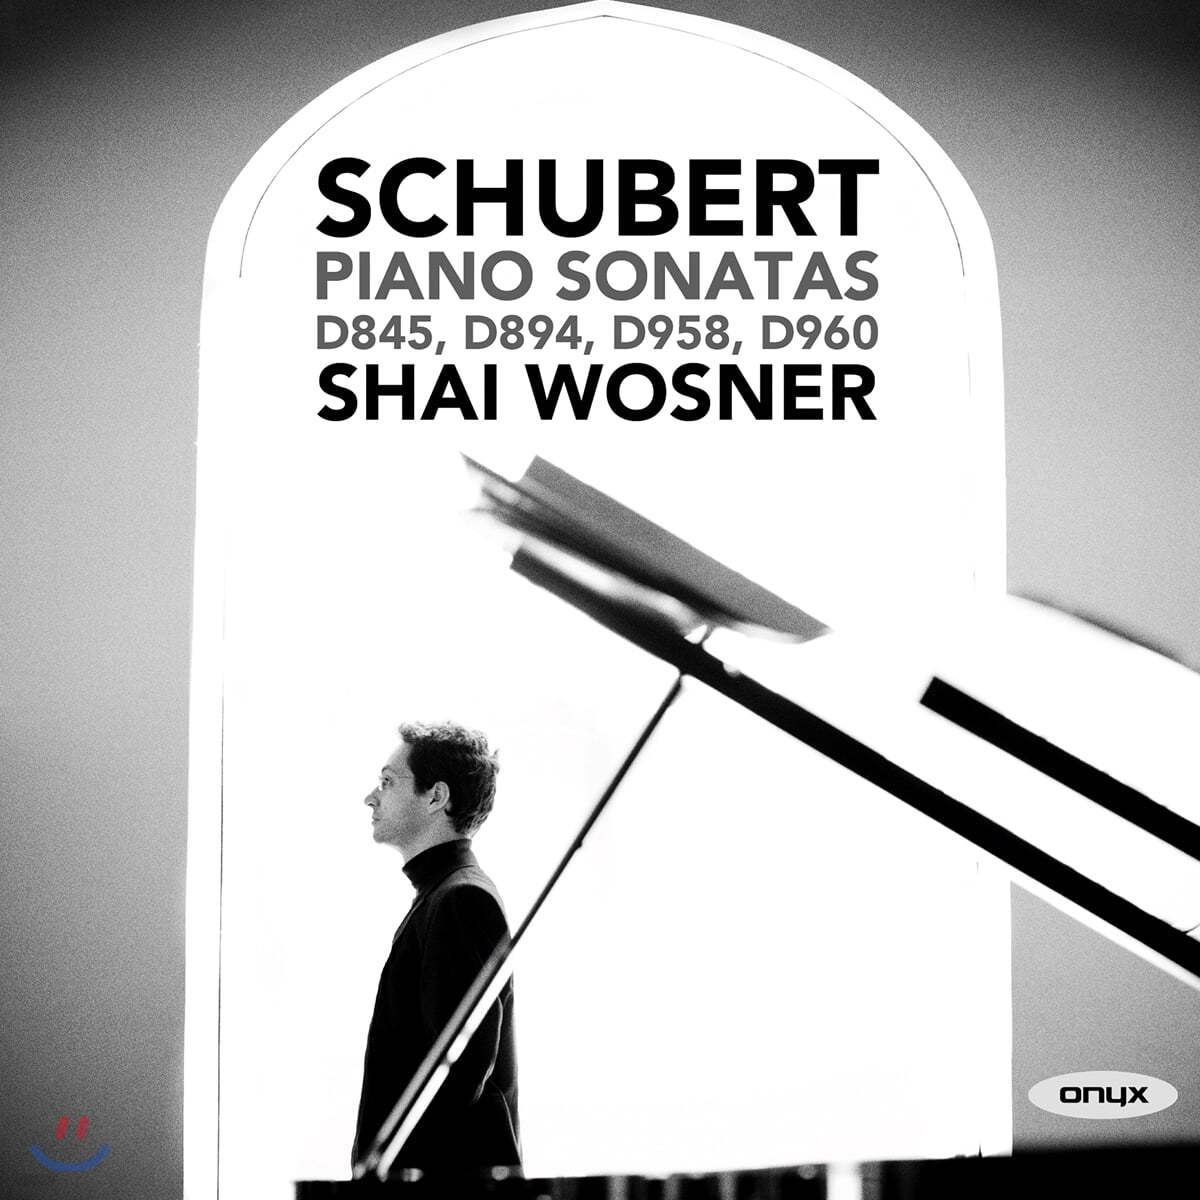 Shai Wosner 슈베르트: 피아노 소나타 (Schubert: Piano Sonatas D854, D894, D958, D960)